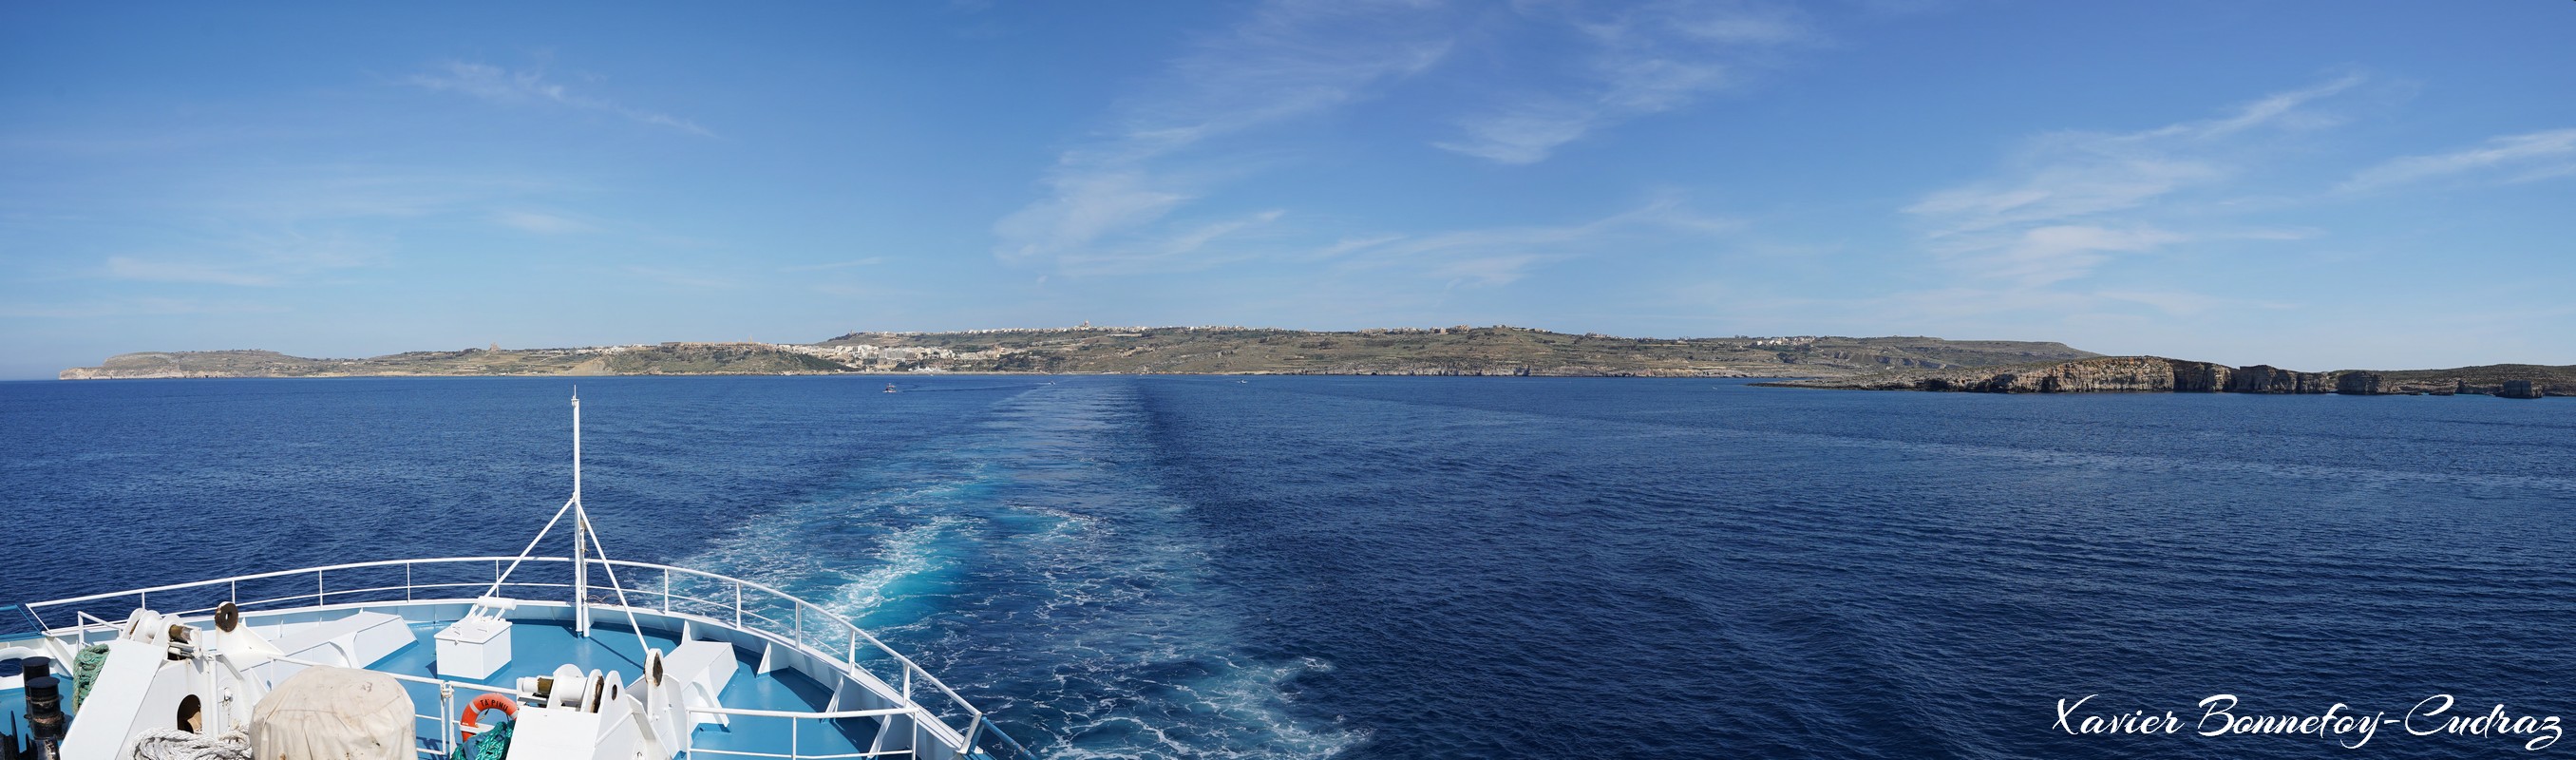 Malta
Mots-clés: Comino geo:lat=36.01198112 geo:lon=14.31443453 geotagged Il-Qala Malte MLT Qala Malta Mer Gozo bateau panorama